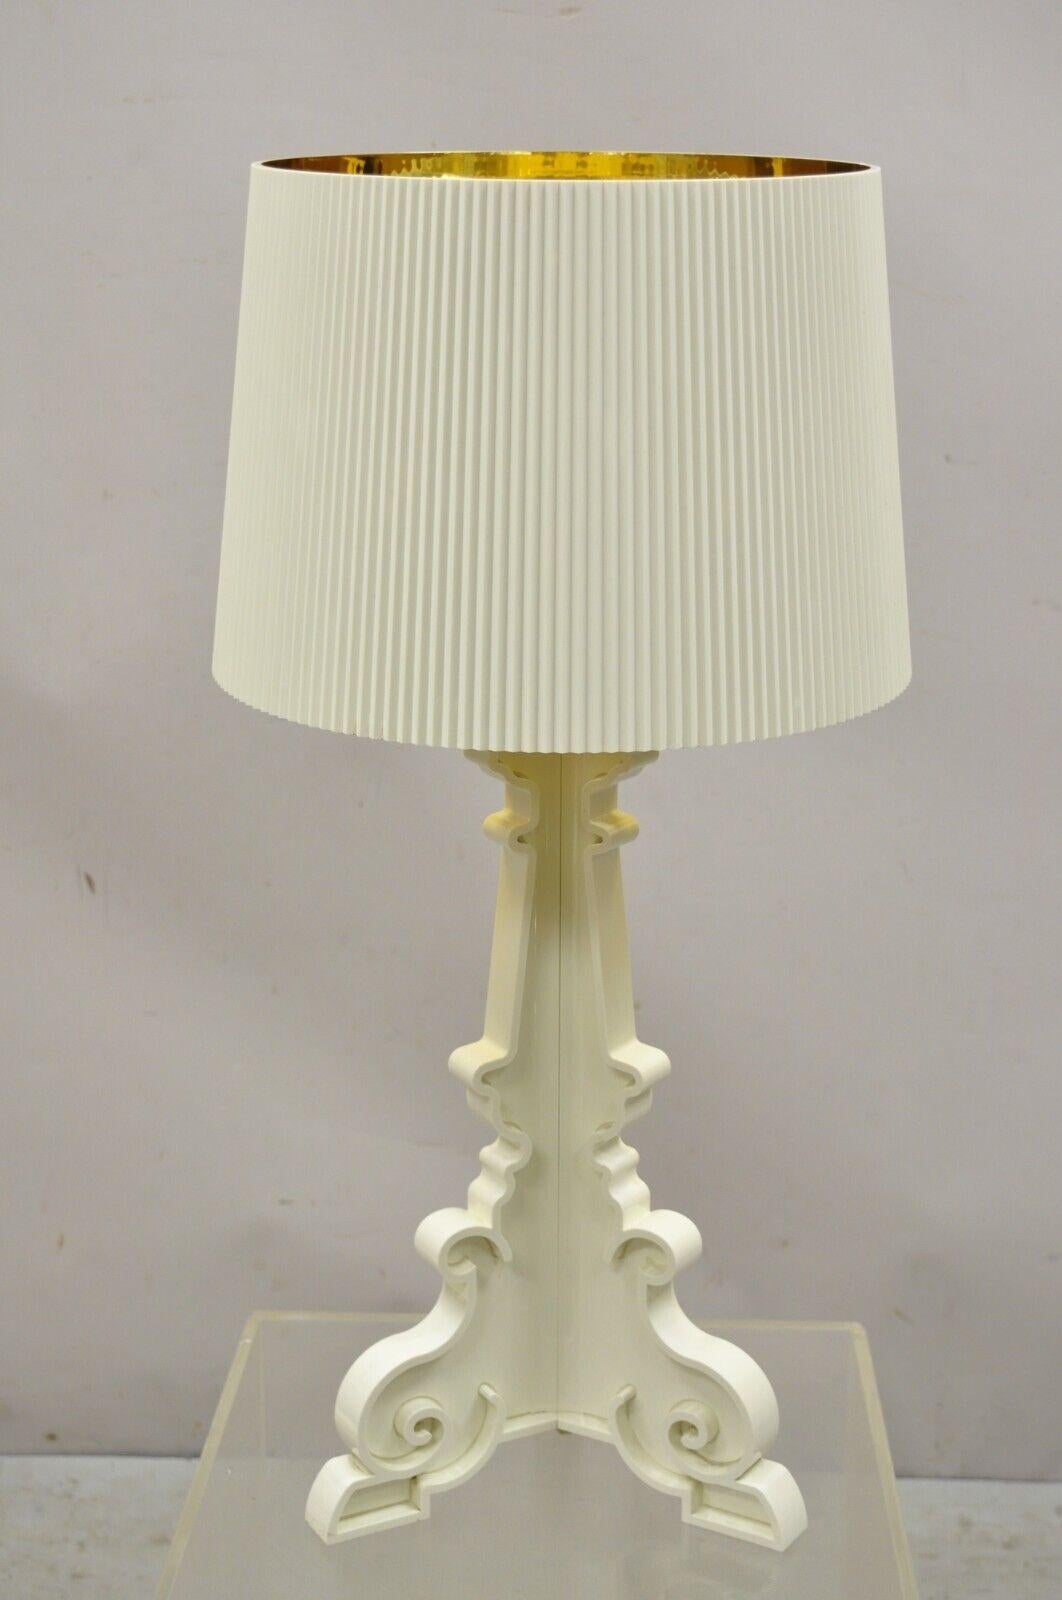 Kartell Ferruccio Laviani Bourgie White Baroque Table Lamp with Shade. L'article présente l'abat-jour original avec l'intérieur doré. Lampe de couleur blanc cassé, Label d'origine, lignes modernistes épurées, style et forme remarquables, prix de